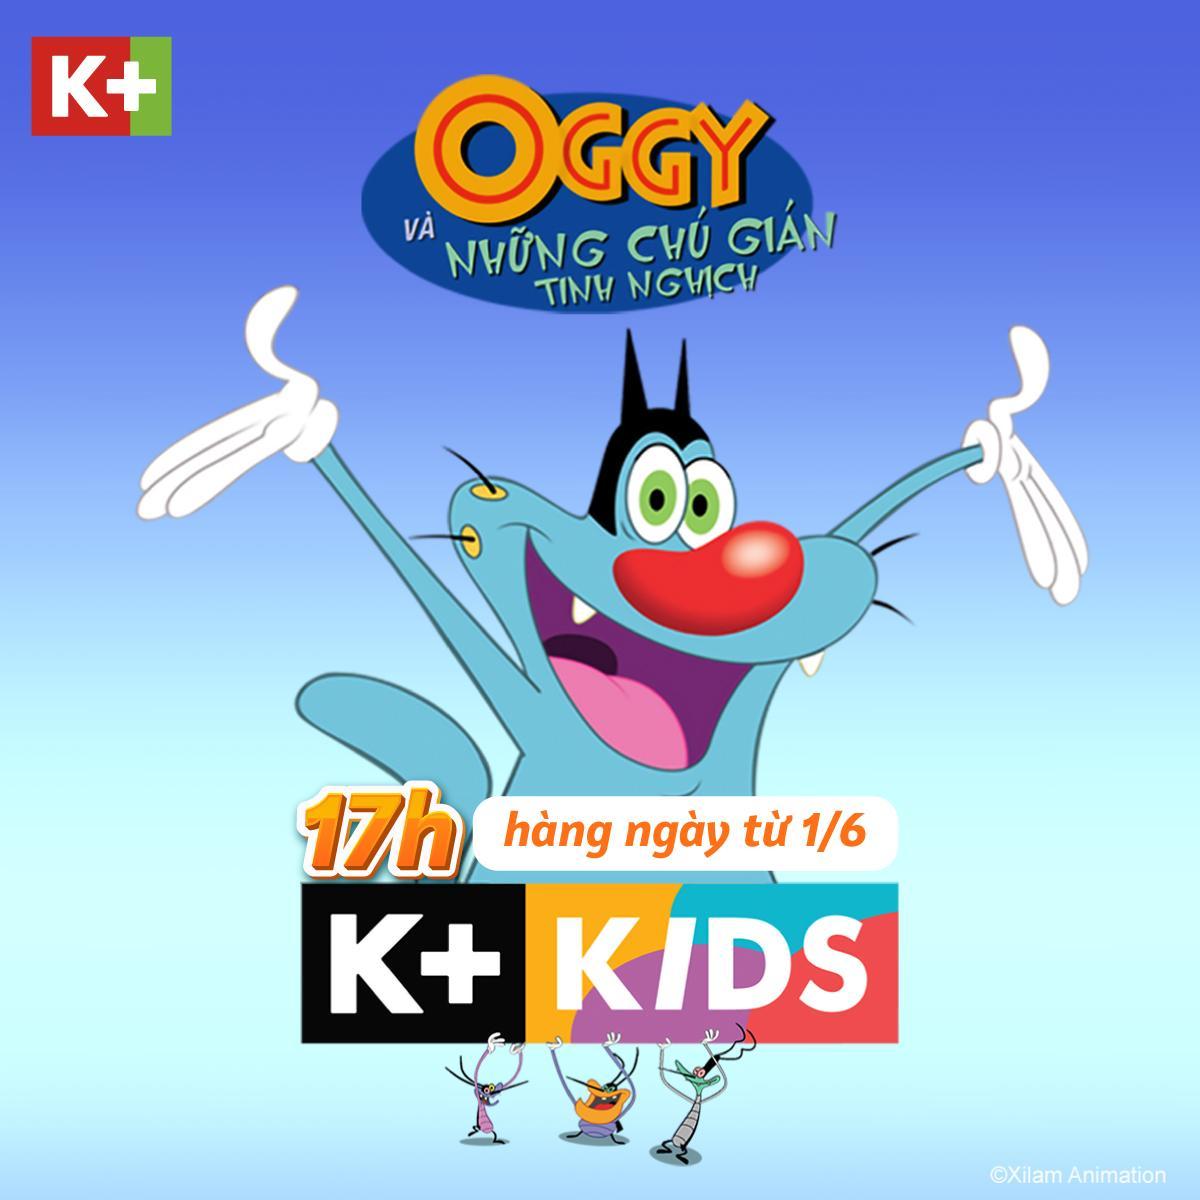 Oggy Và Những Chú Gián Tinh Nghịch trên K+ - Đừng bỏ lỡ cơ hội thưởng thức bộ phim hài hước, thư giãn và bổ ích này trên K+ cùng Oggy và những chú gián tinh nghịch.